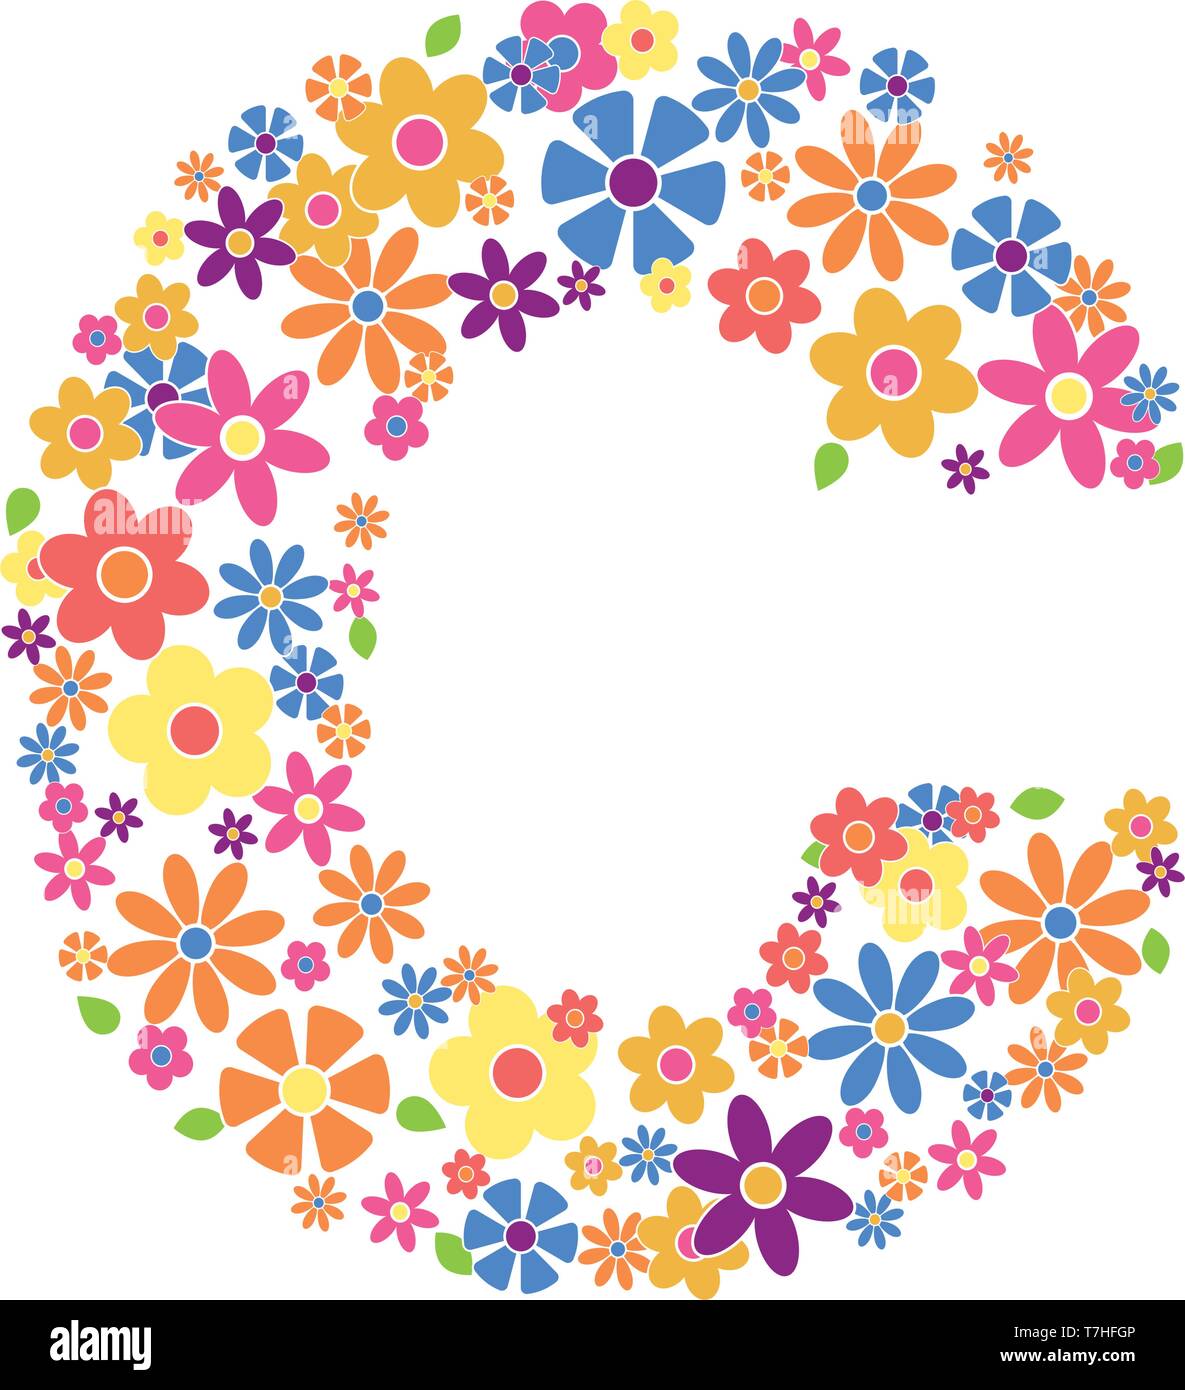 Lettere C riempito con una varietà di fiori colorati isolati su sfondo bianco illustrazione vettoriale Illustrazione Vettoriale